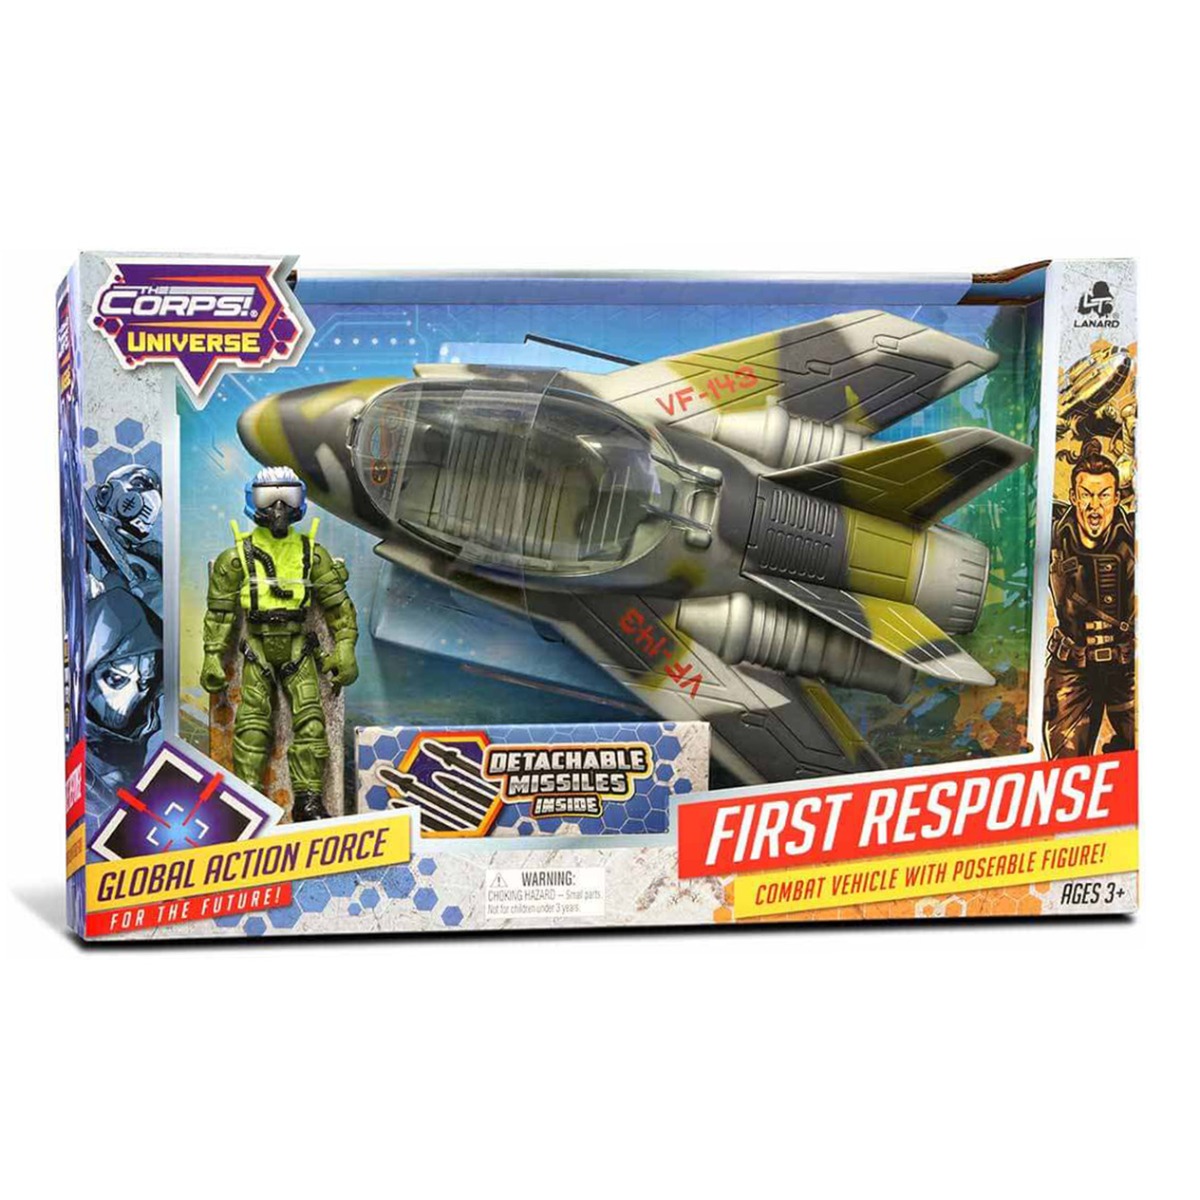 Set avion militar cu figurina, The Corps Universe, Lanard Toys